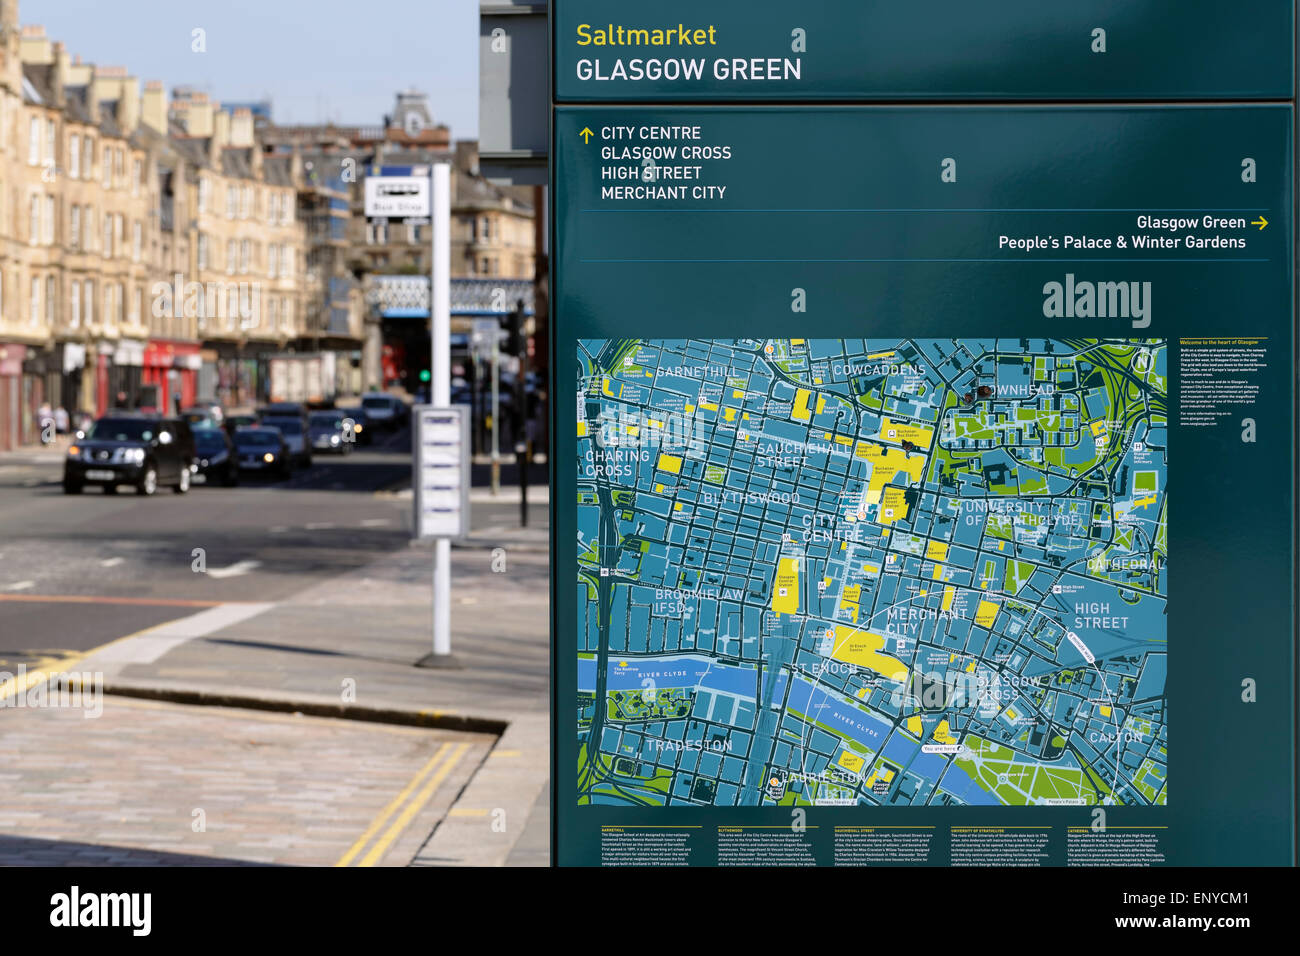 A Glasgow public Street Map on Saltmarket at Glasgow Green dans le centre-ville, Écosse, Royaume-Uni Banque D'Images